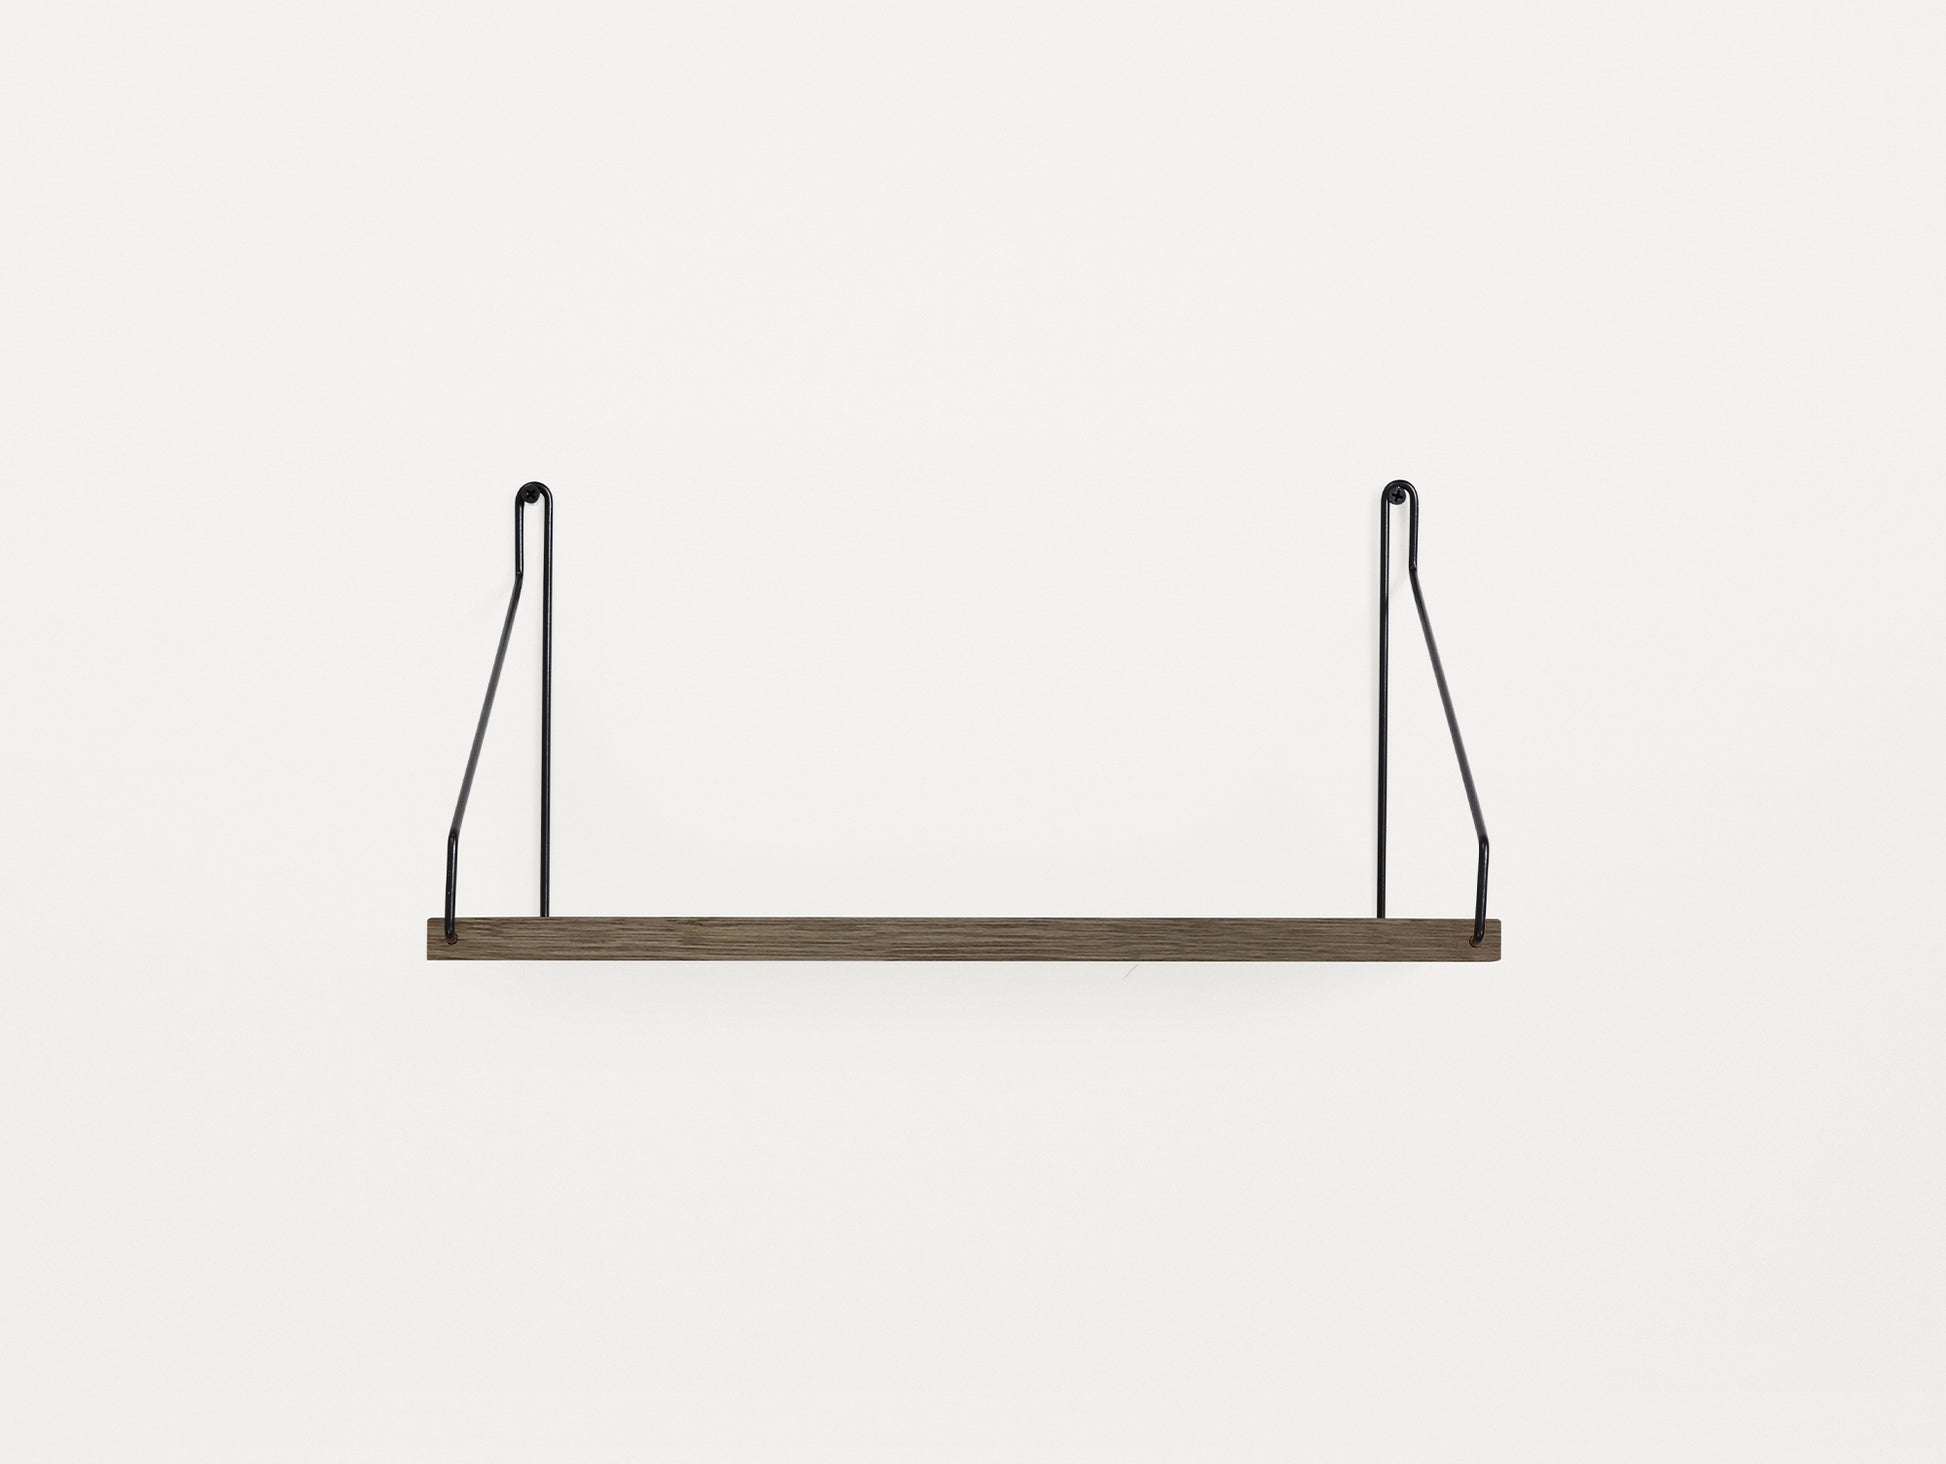 Shelf by Frama - D20 W40 / Dark Stained Oak / Black Steel Brackets